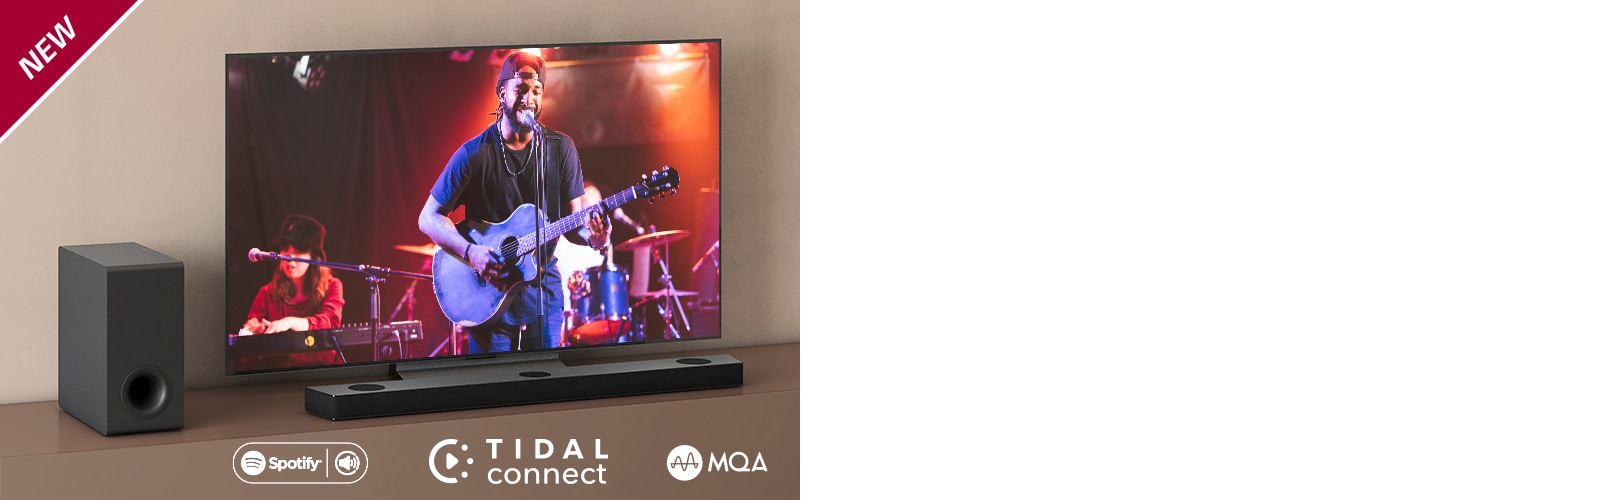 Ein LG TV steht auf dem braunen Regal, eine LG Sound Bar S75Q ist davor platziert. Ein Subwoofer steht links vom Fernseher. Auf dem Bildschirm läuft ein Konzert. In der linken oberen Ecke steht „NEU“.